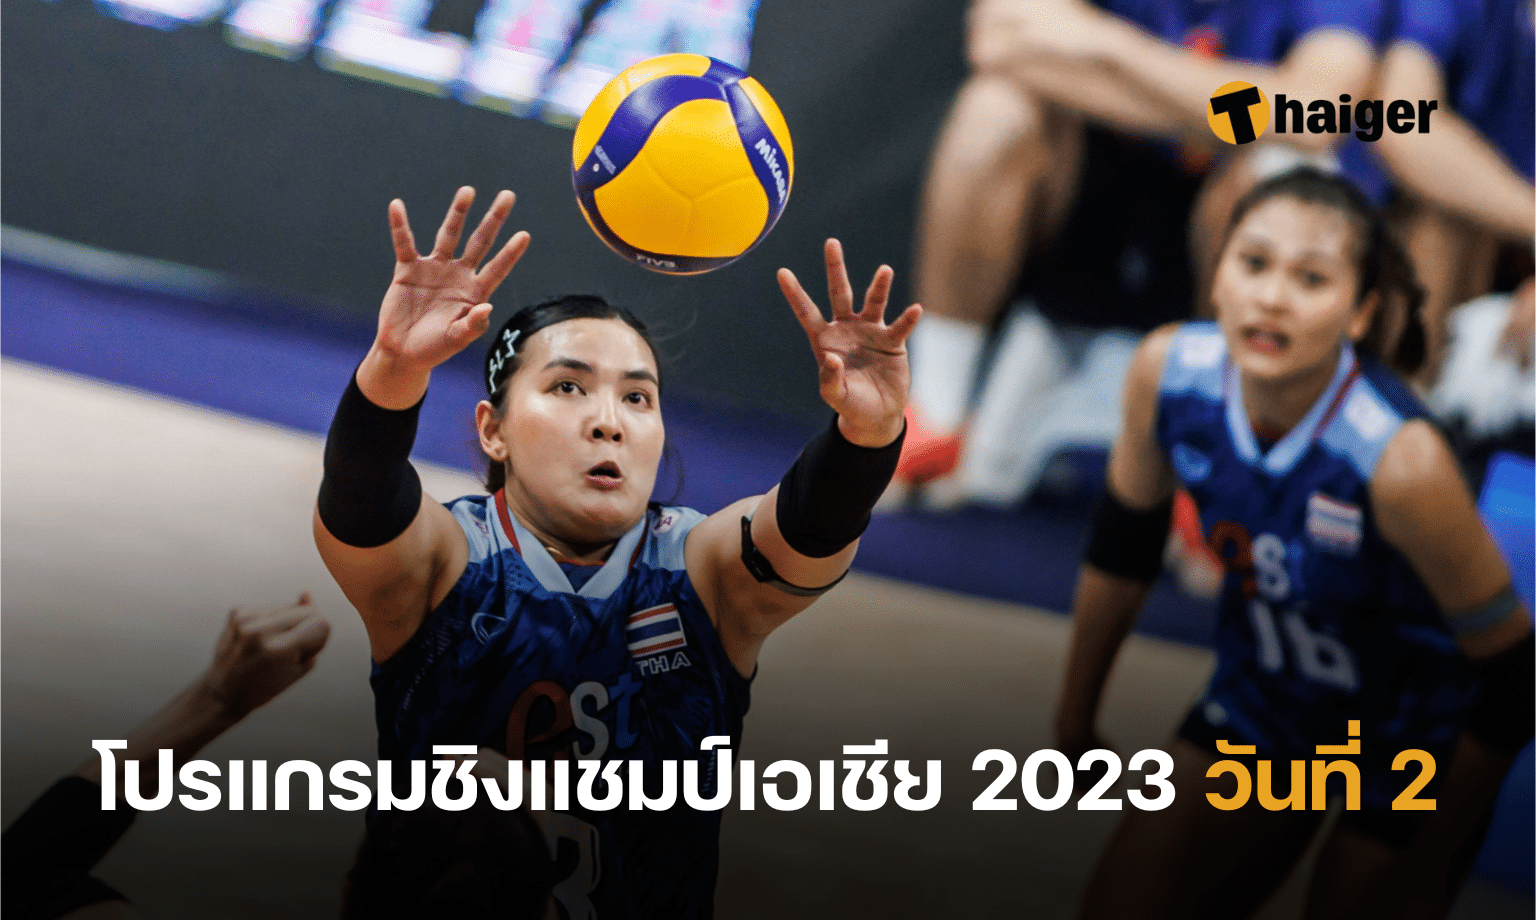 โปรแกรมวอลเลย์บอลหญิงชิงแชมป์เอเชีย 2023 วันที่ 2